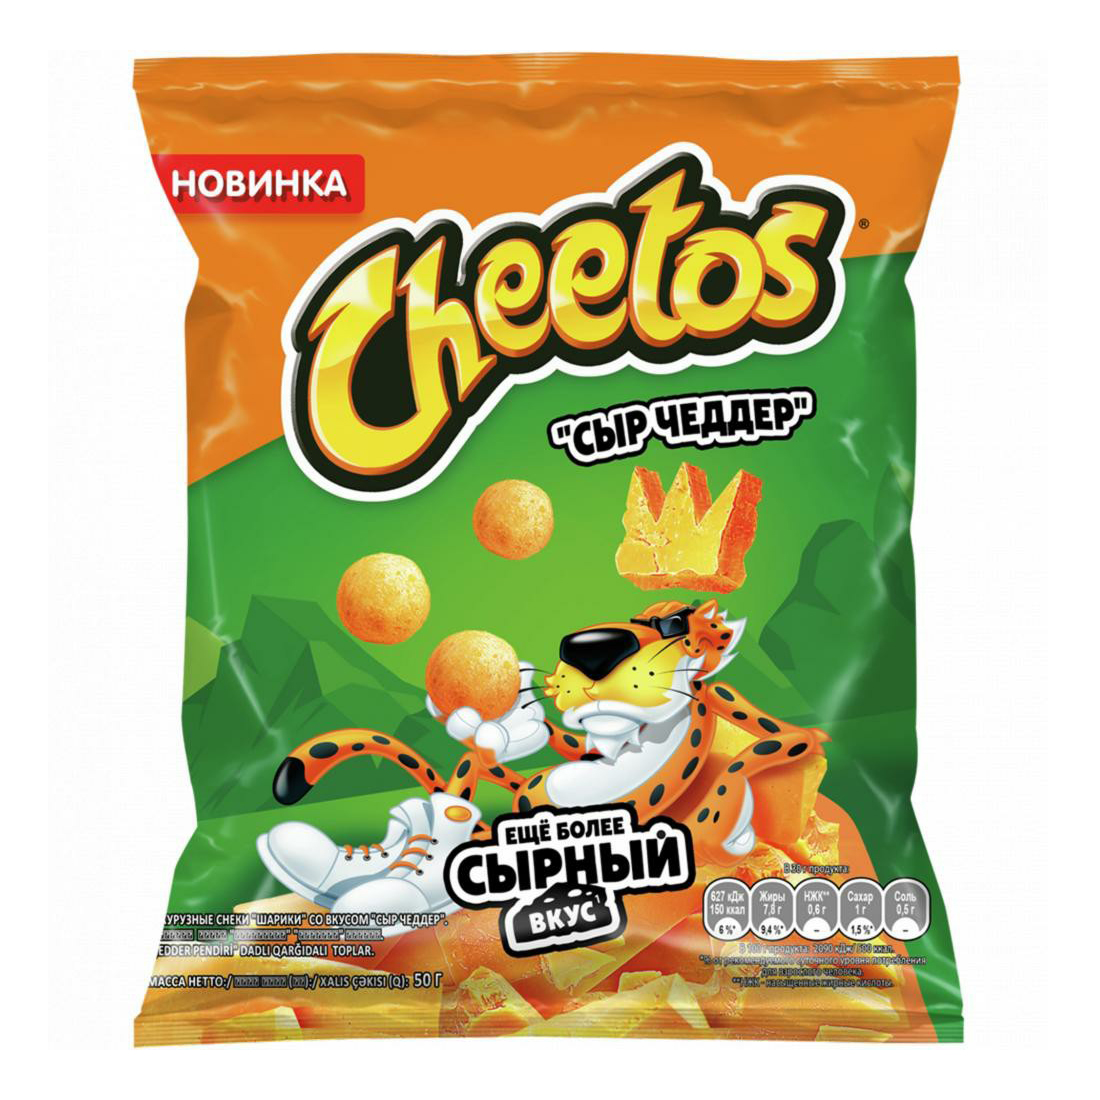 Снеки кукурузные Cheetos сыр чеддер 50 г